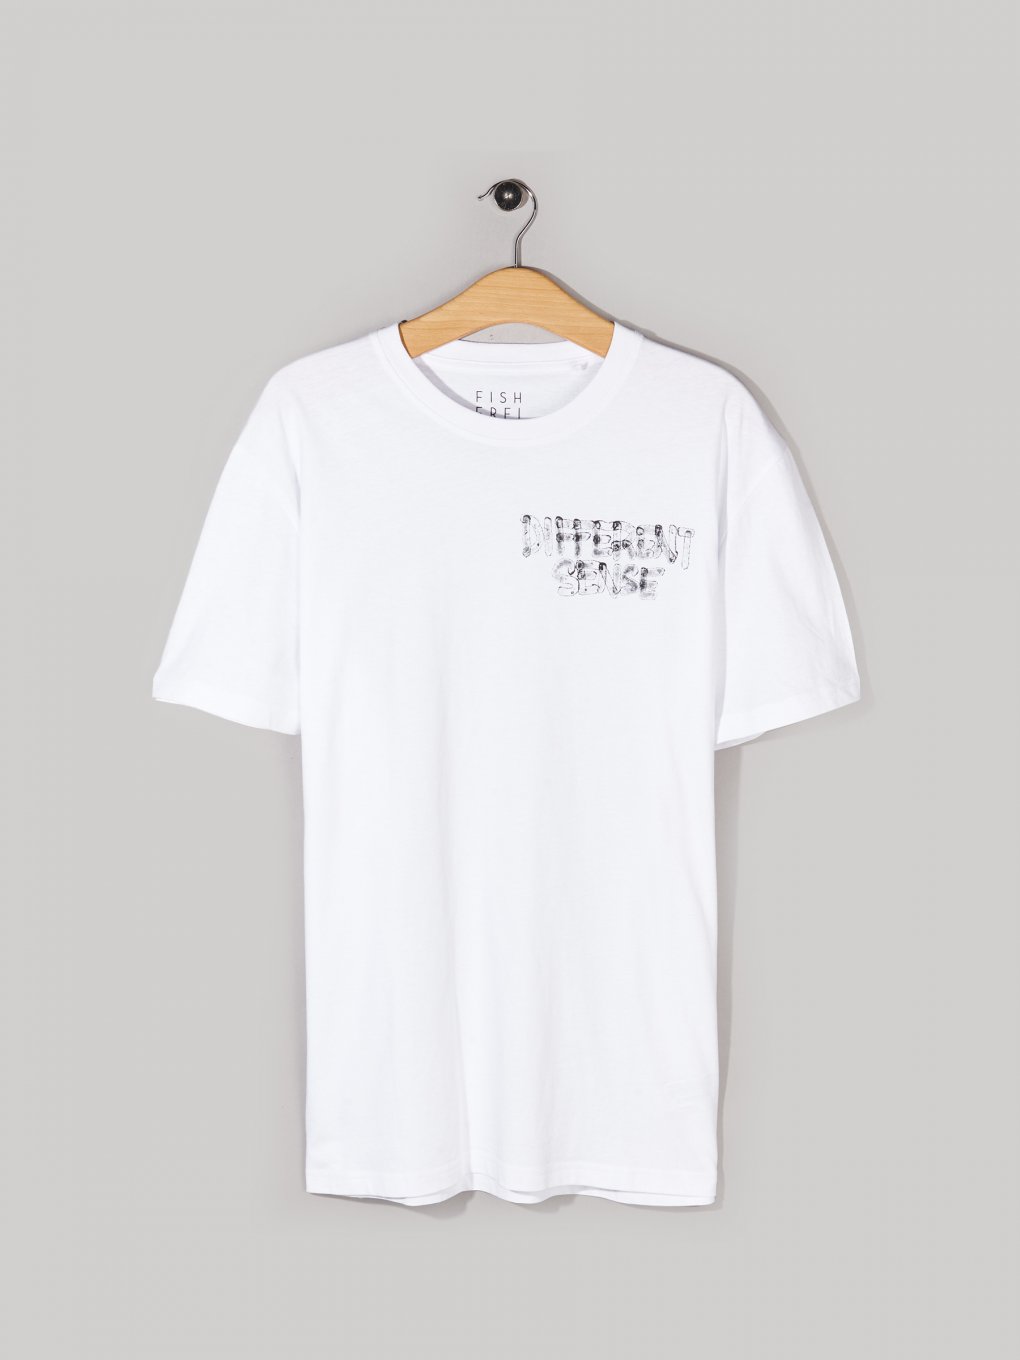 Herren-T-Shirt aus Baumwolle mit Aufschrift